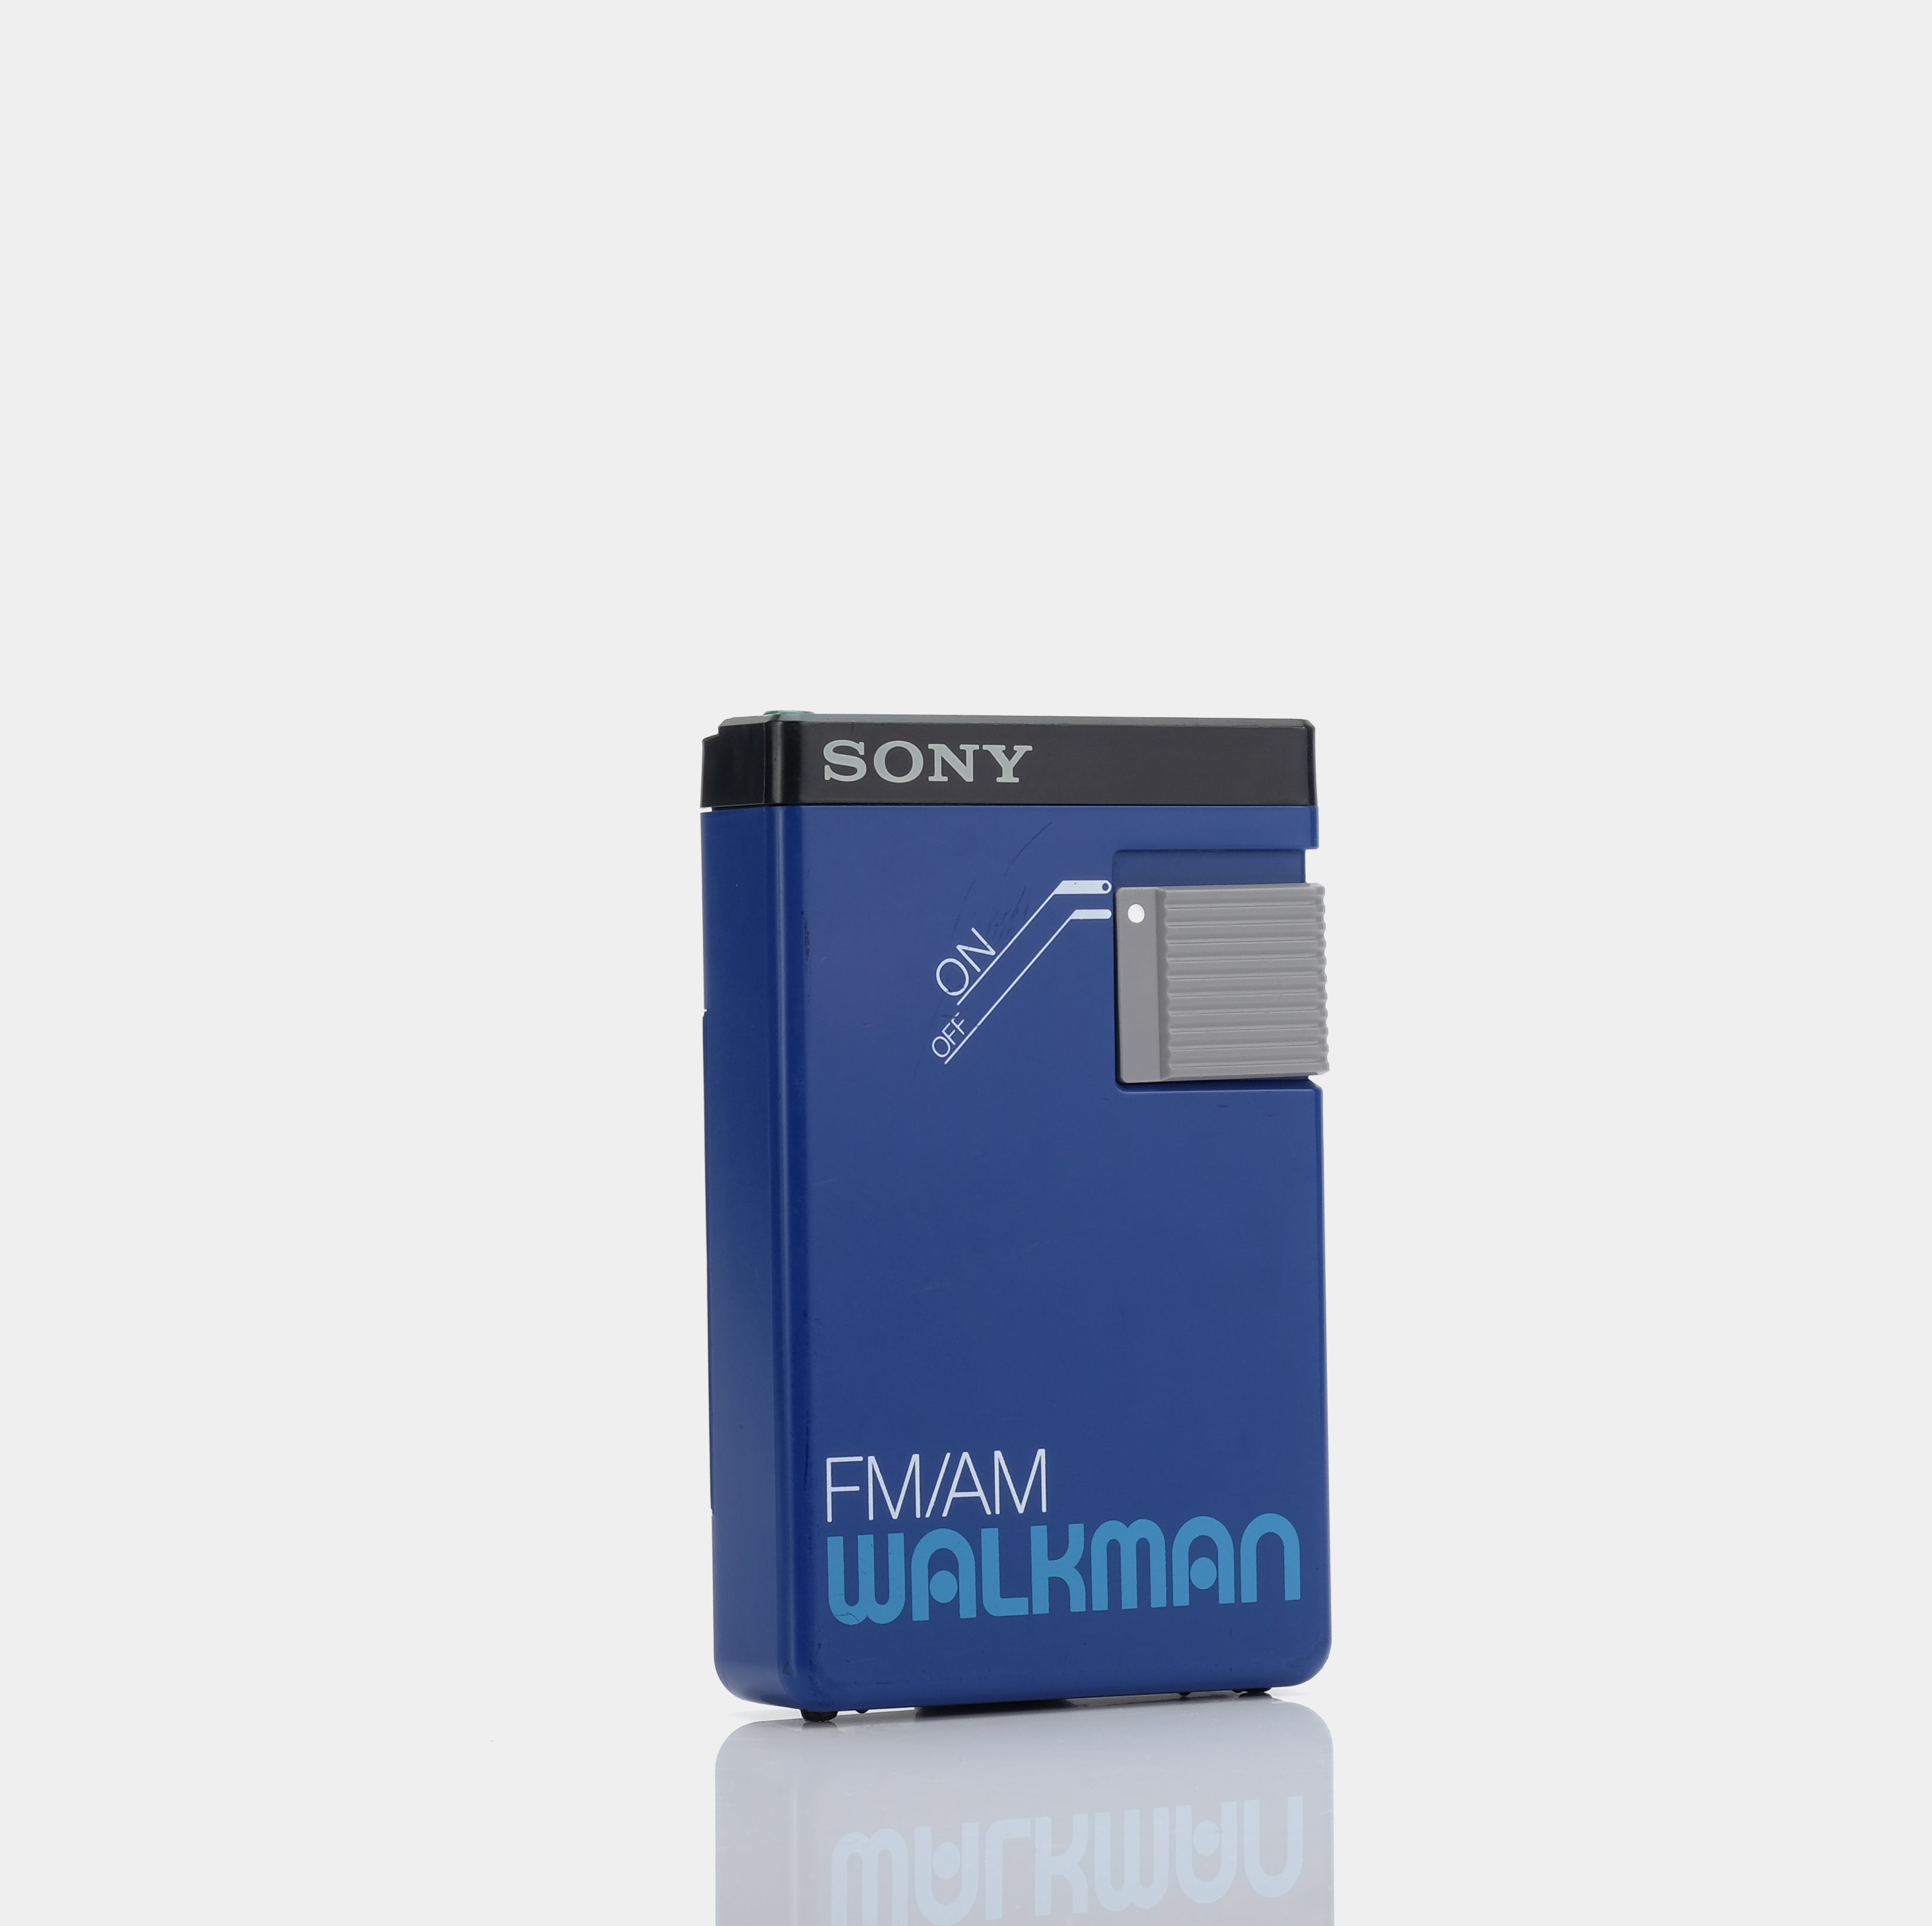 Sony Walkman SRF-21W AM/FM Portable Radio